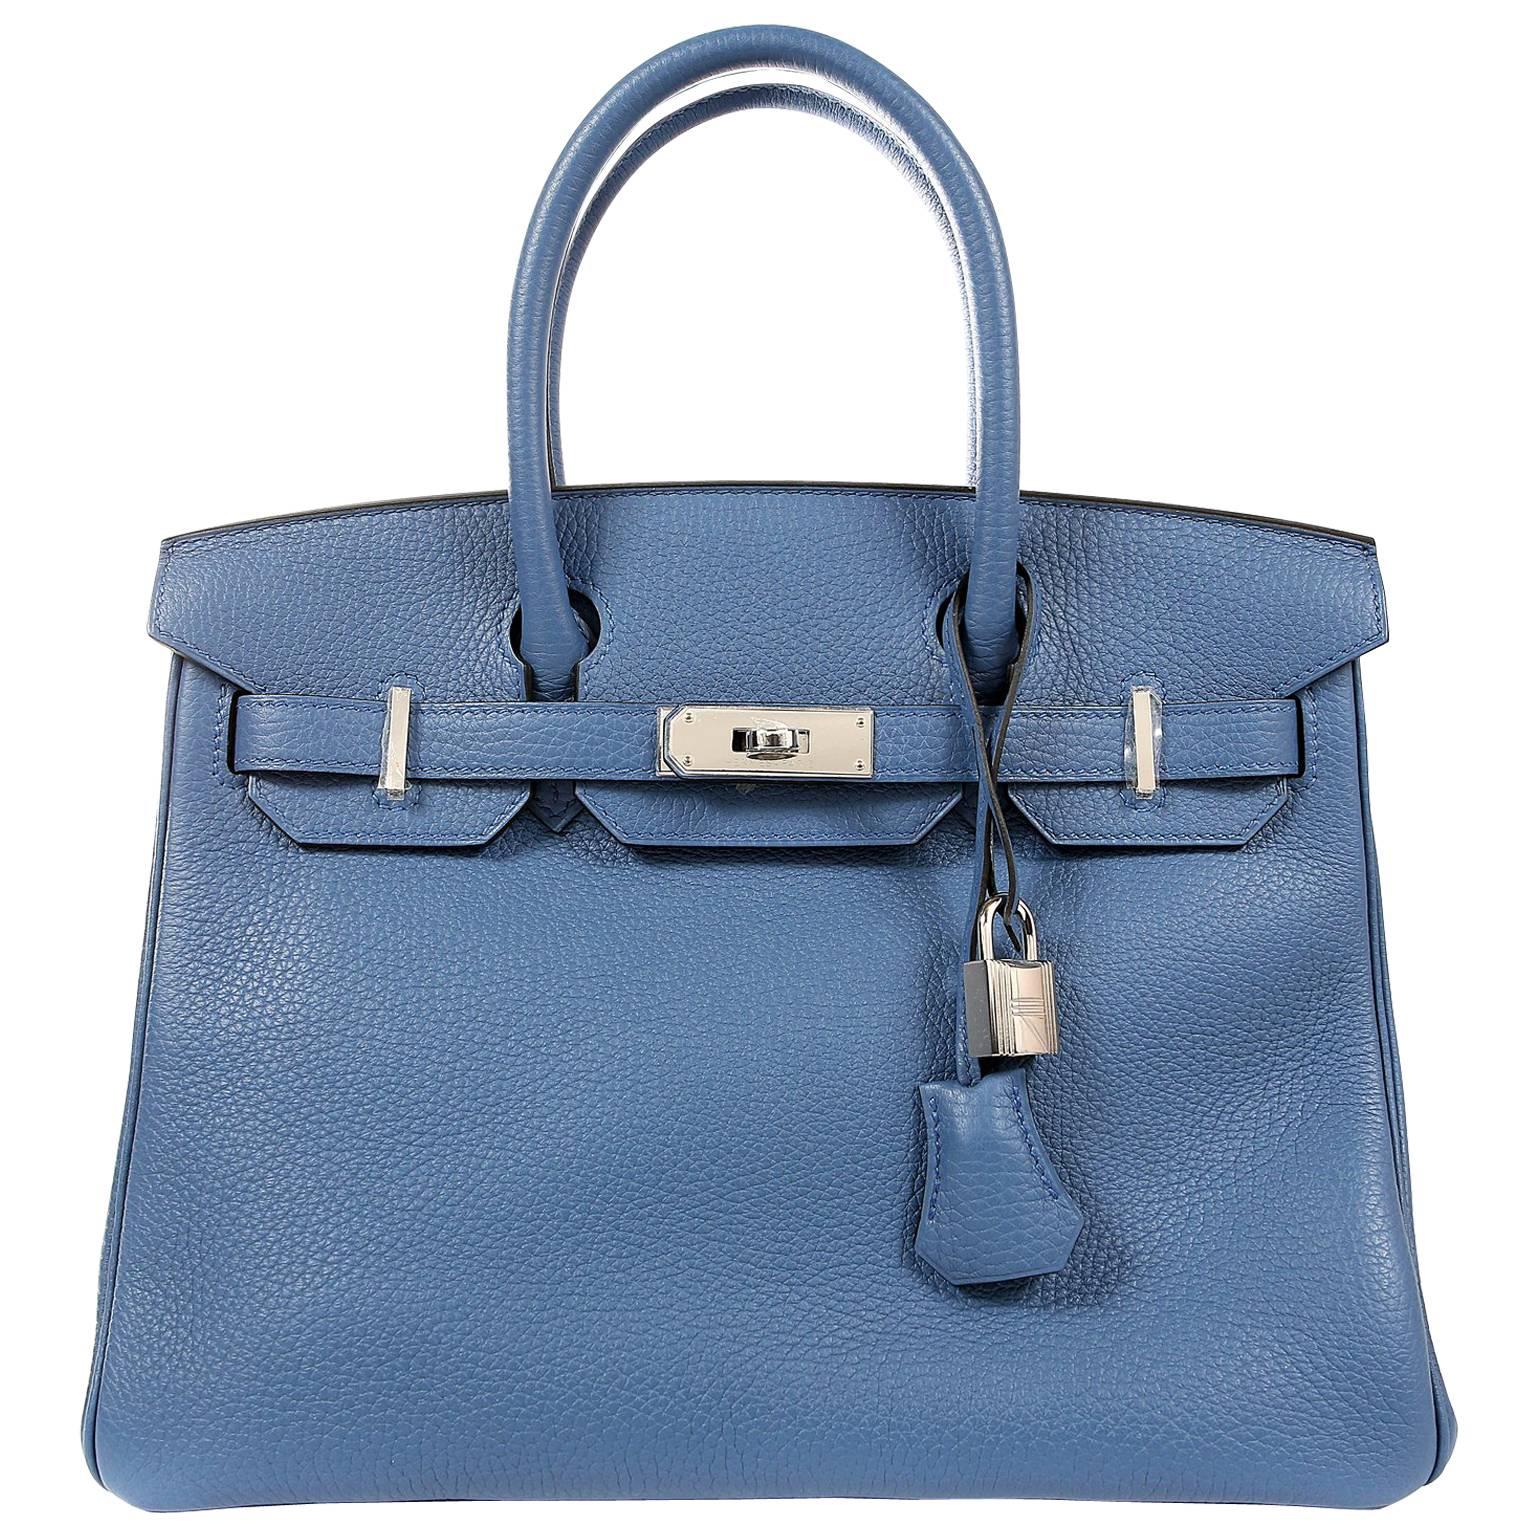 Hermès Blue Azur Togo 30 cm Birkin Bag with Palladium